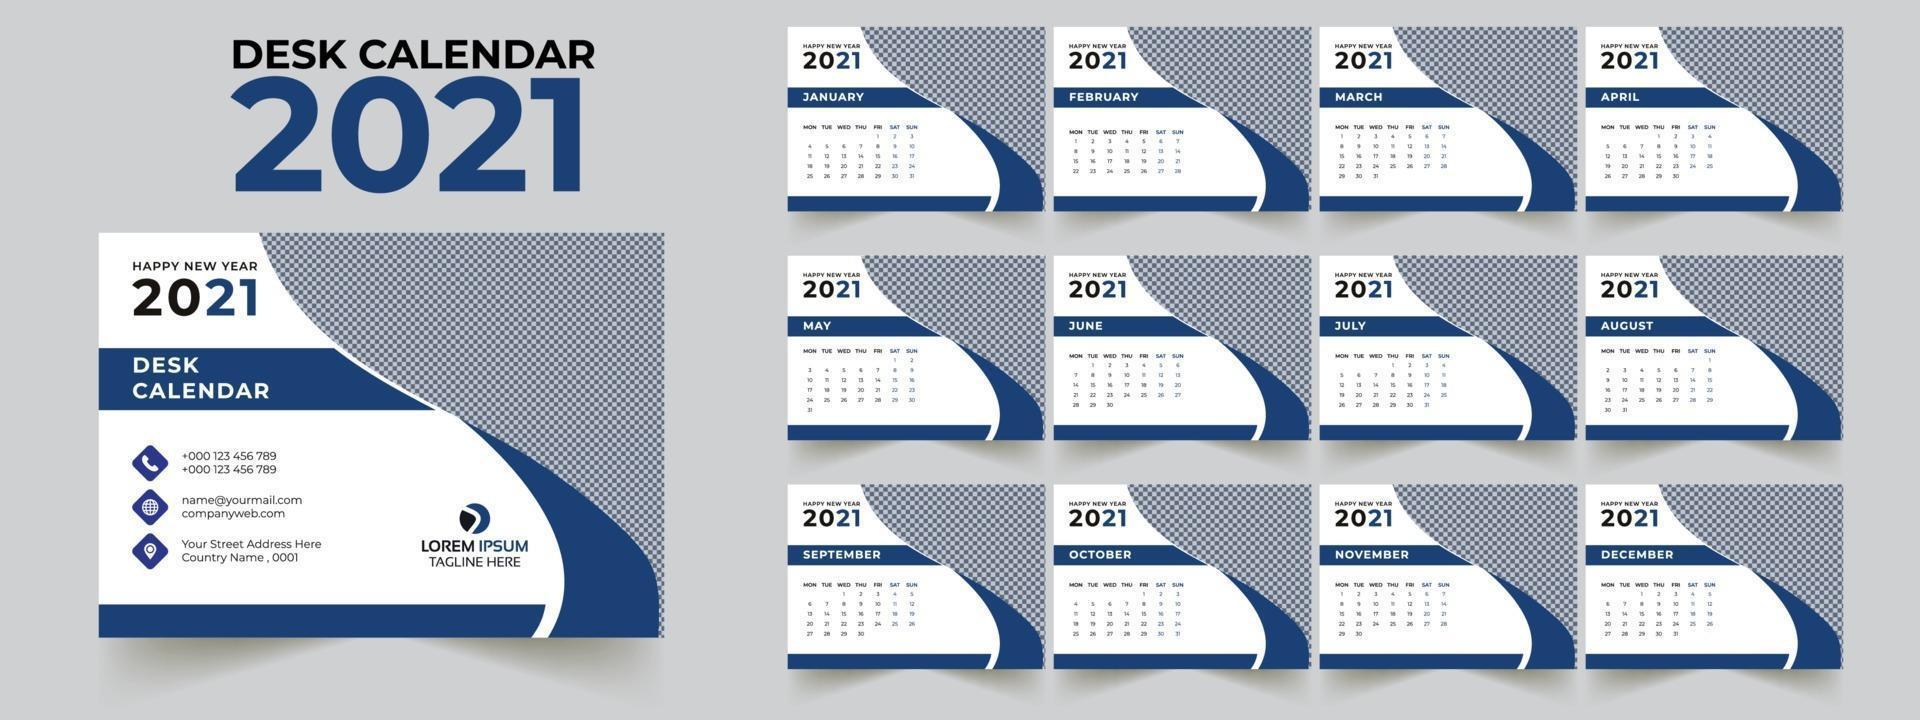 Desk Calendar 2021 Template Set of 12 Months vector